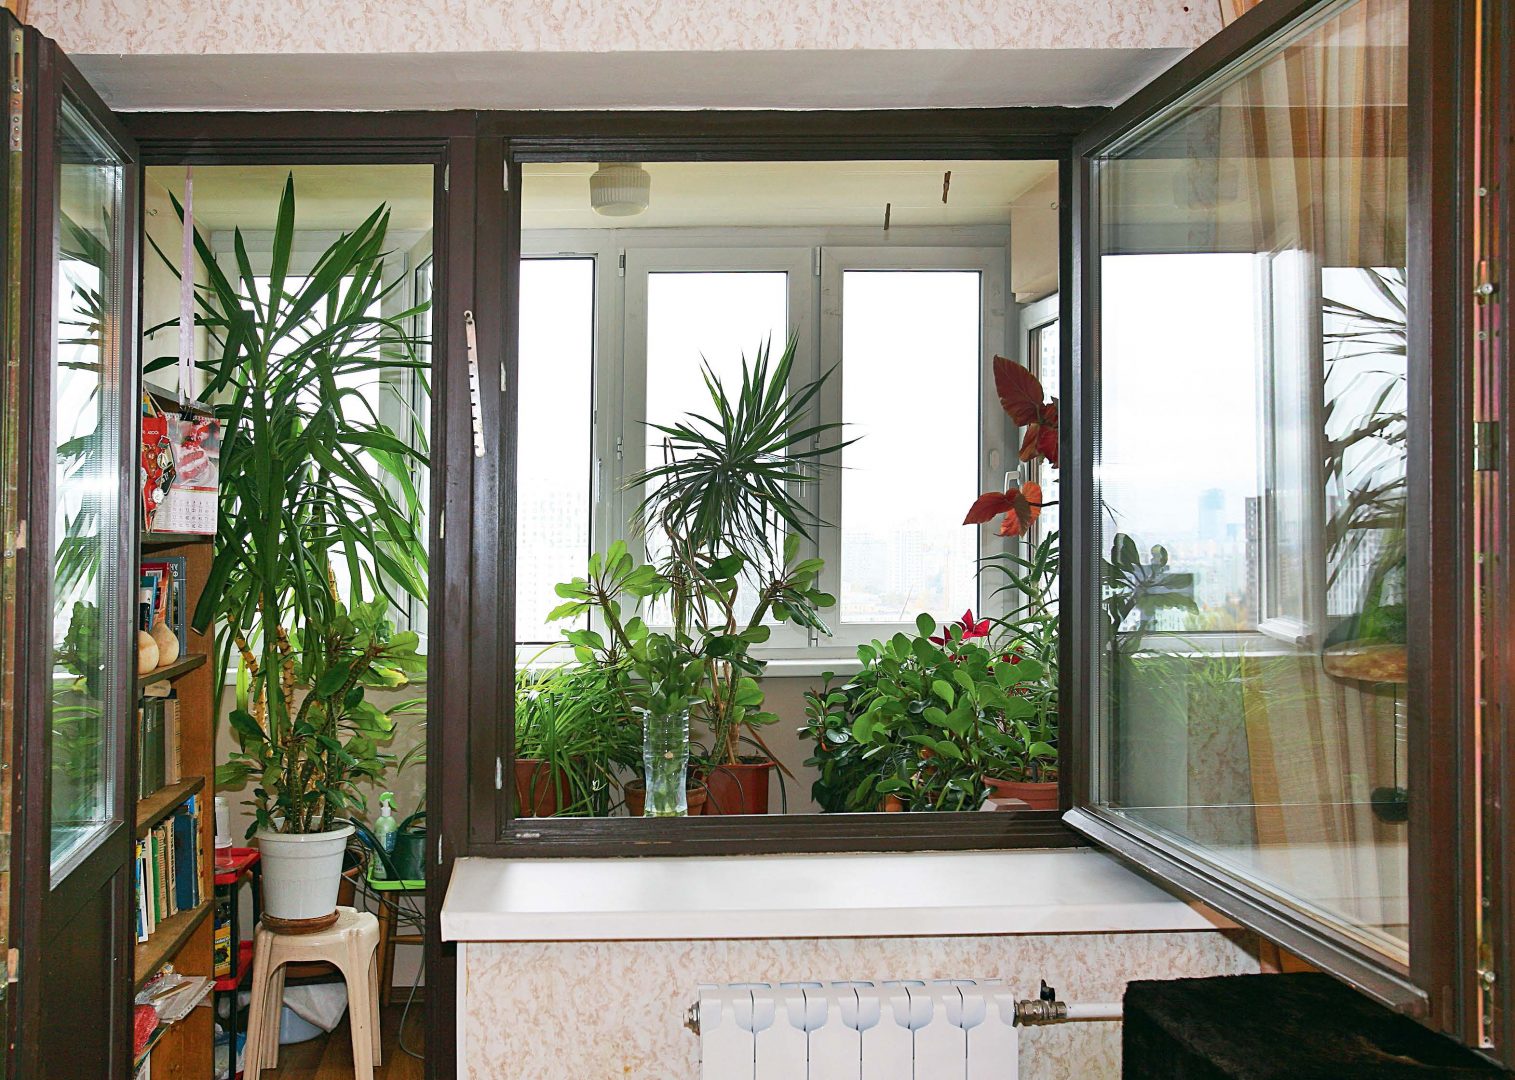 Как сделать зимний сад на балконе квартиры своими руками: фото